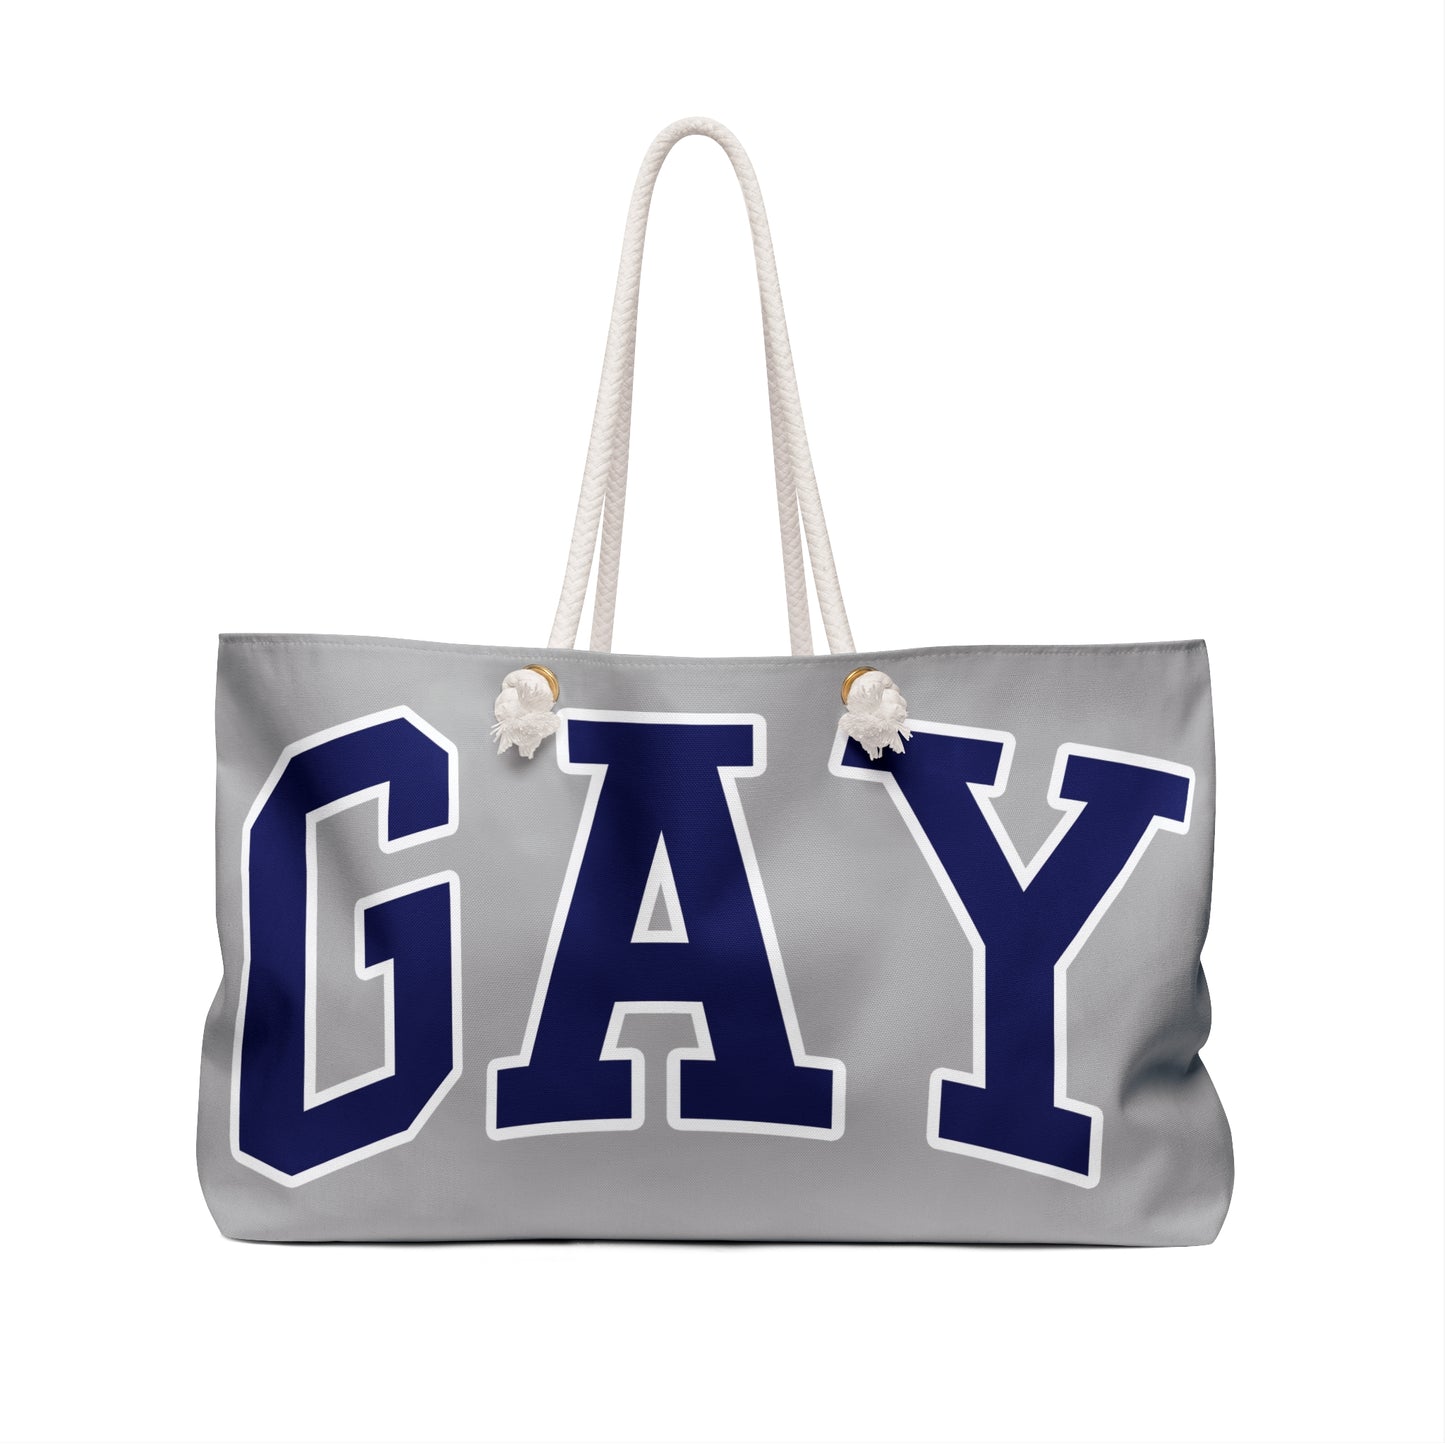 GAY Weekender Bag